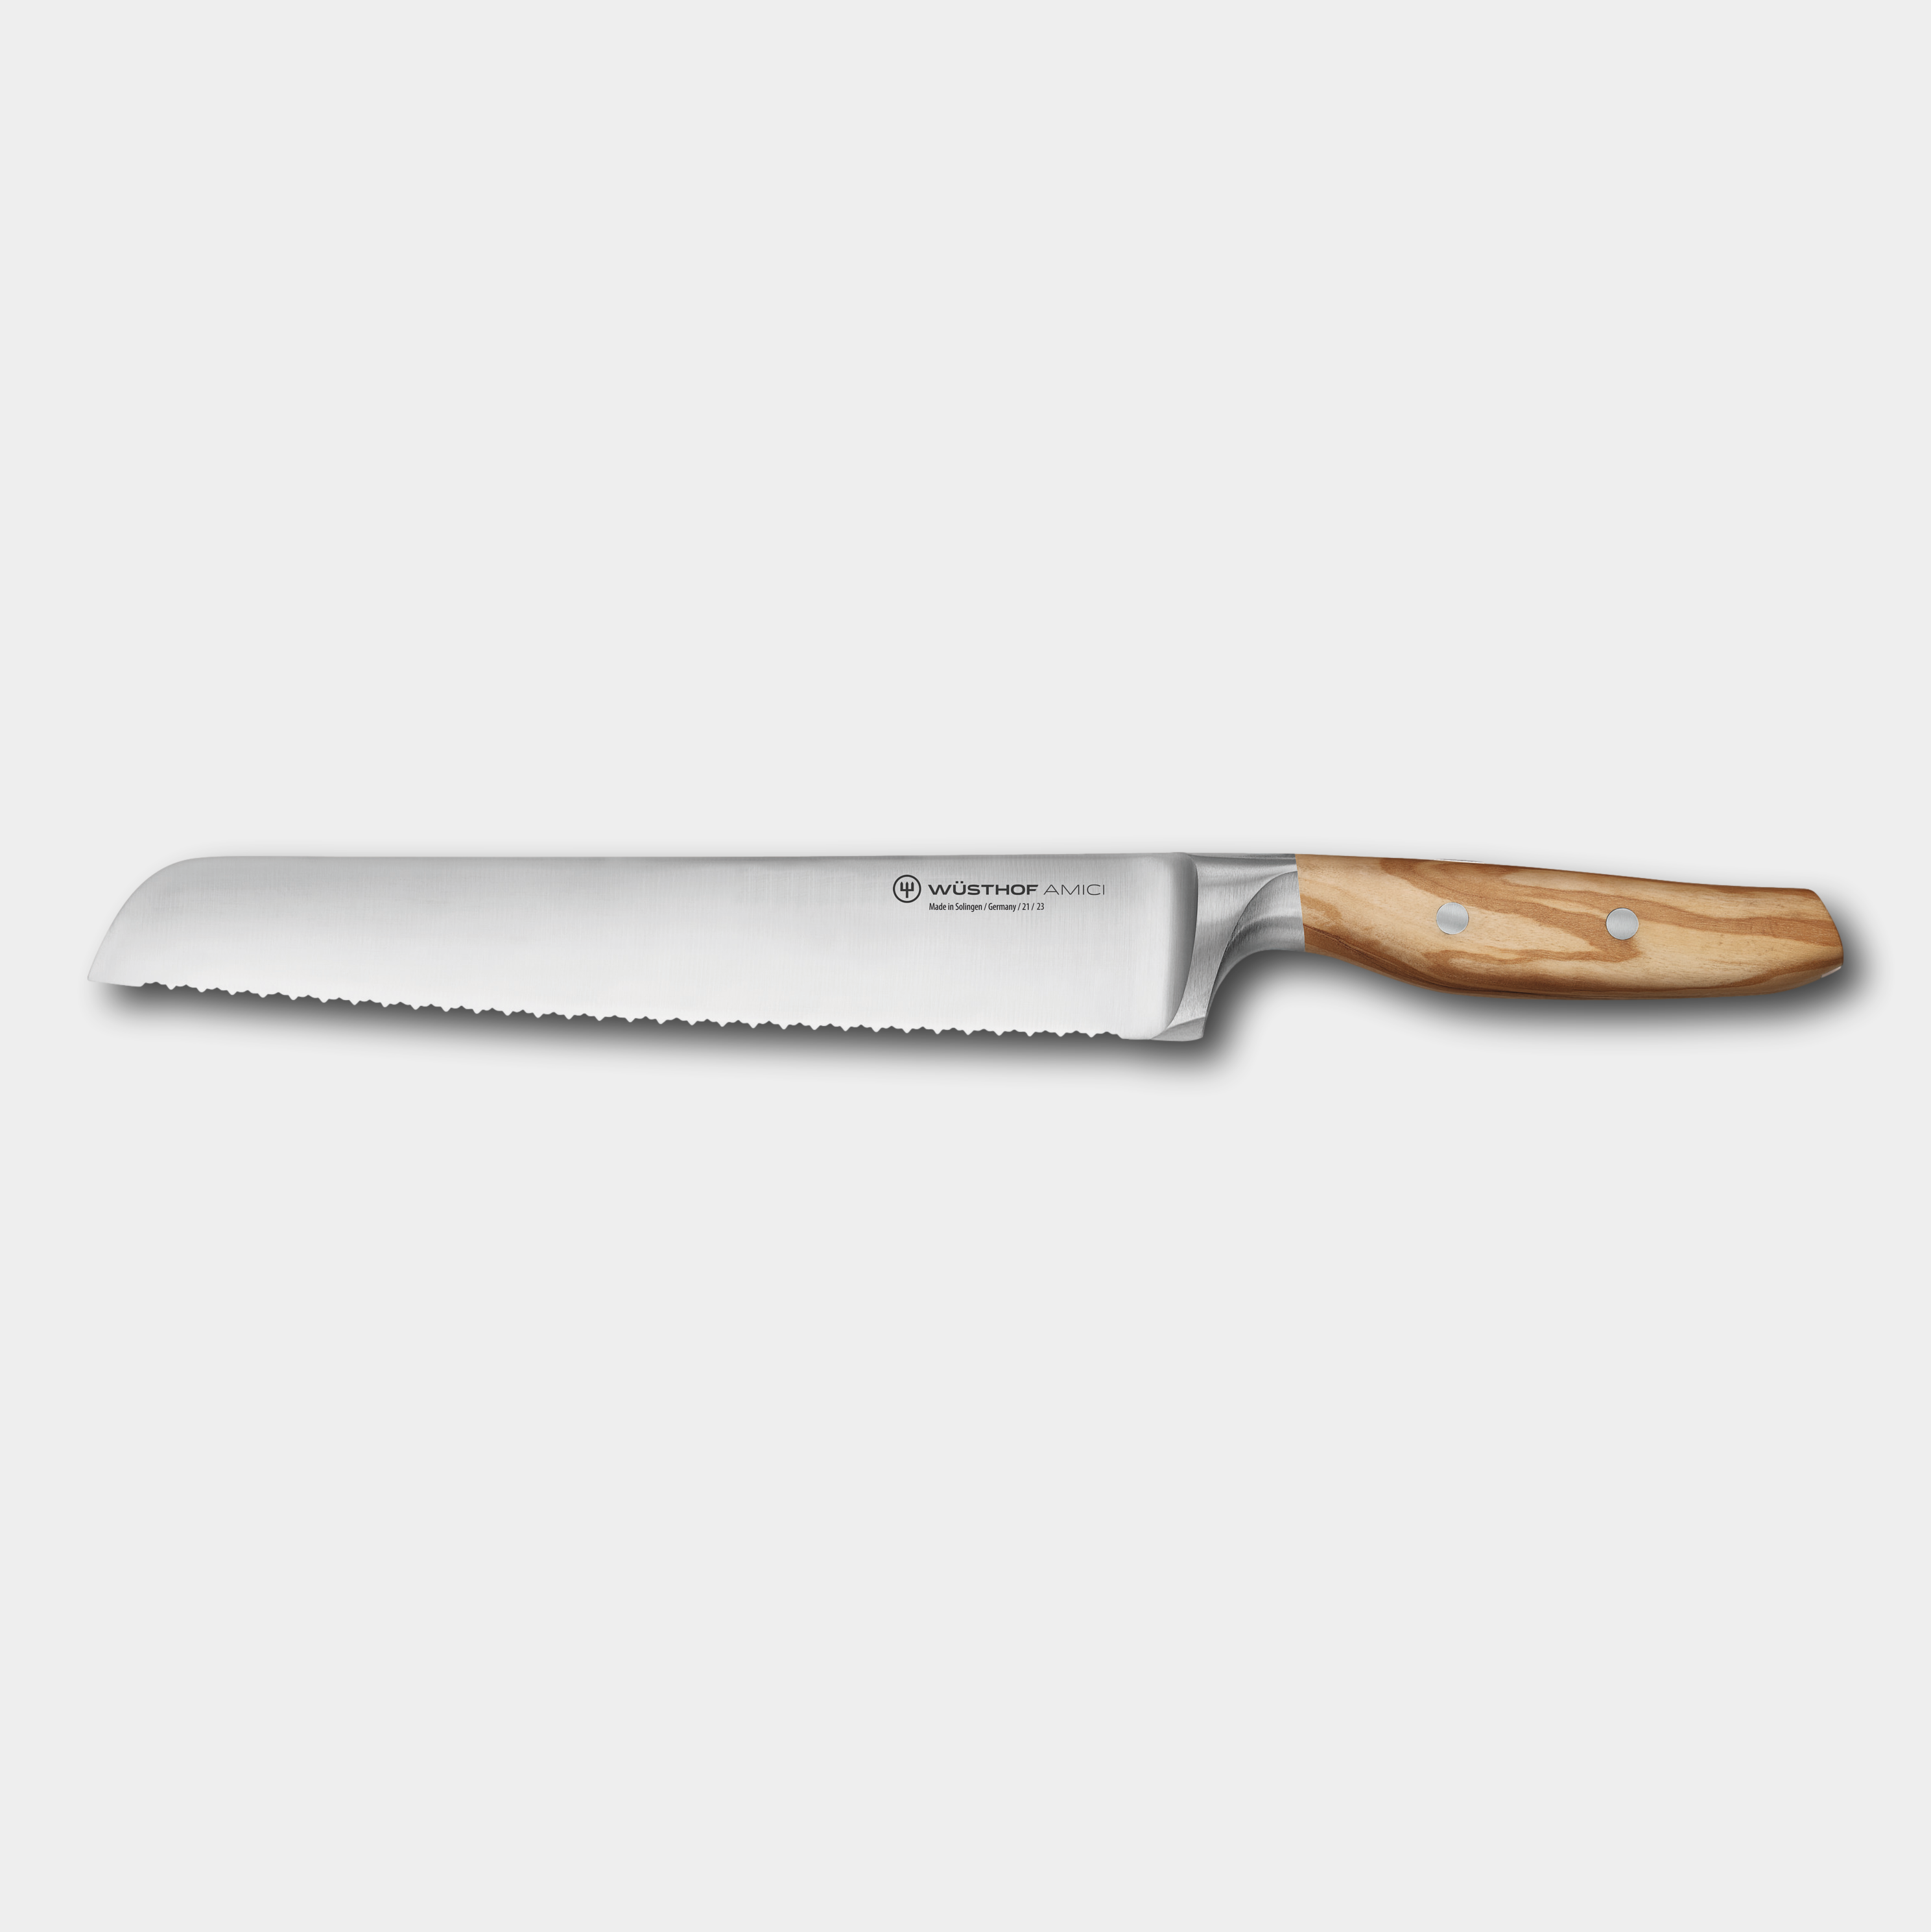 Wusthof Amici 23cm Bread Knife